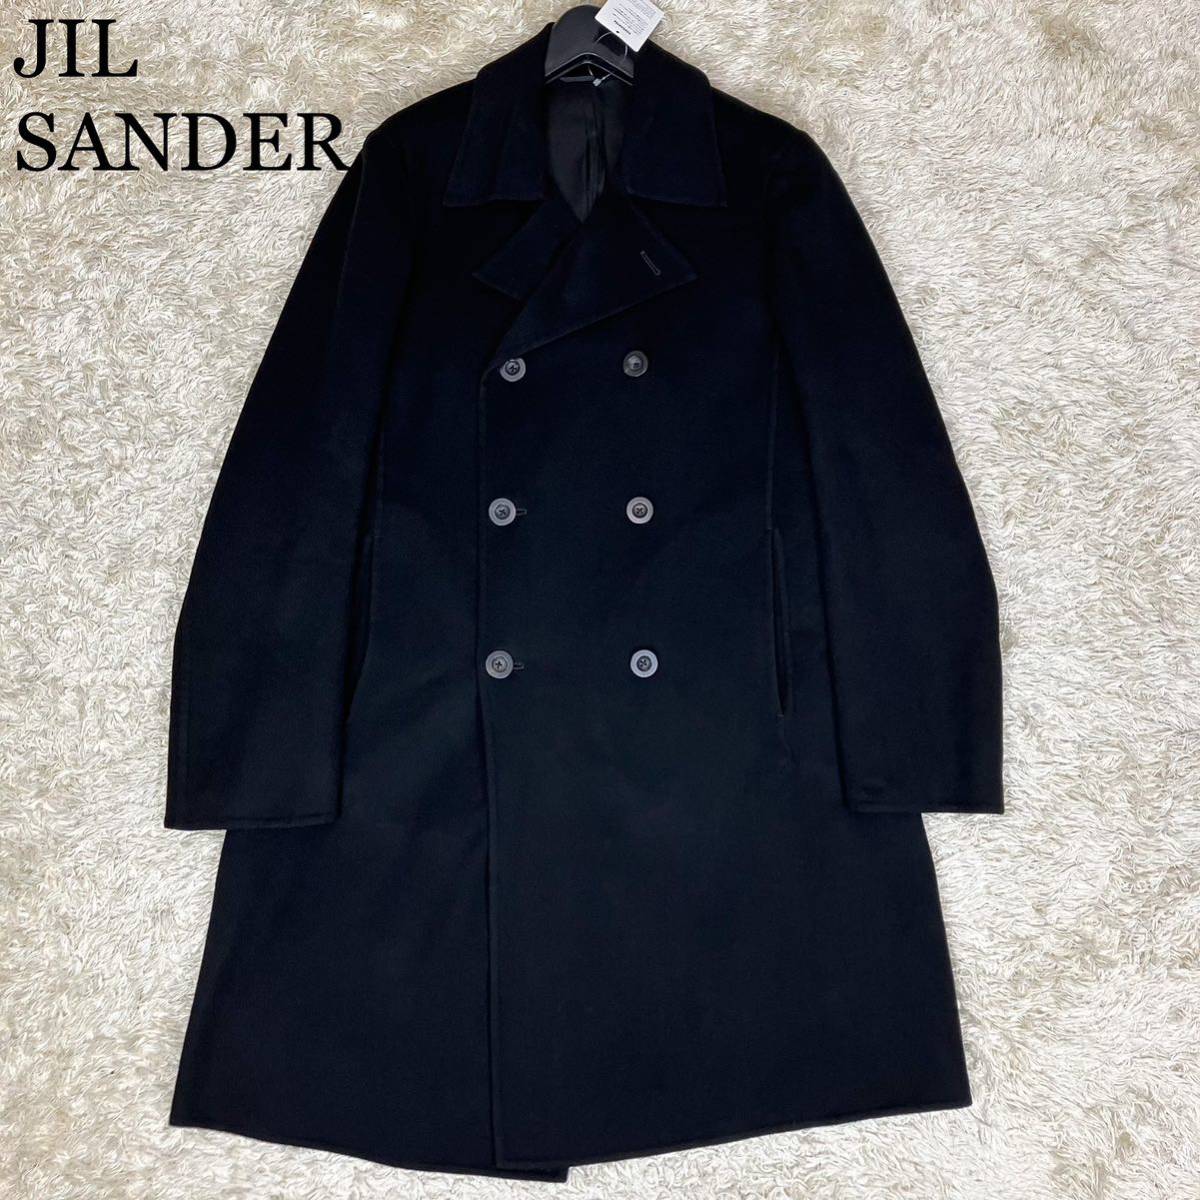 JIL SANDER ジルサンダー 極上カシミヤ チェスターコート ロングコート ブラック 黒 ダブルブレスト ダブルボタン 48サイズ メンズ 美品